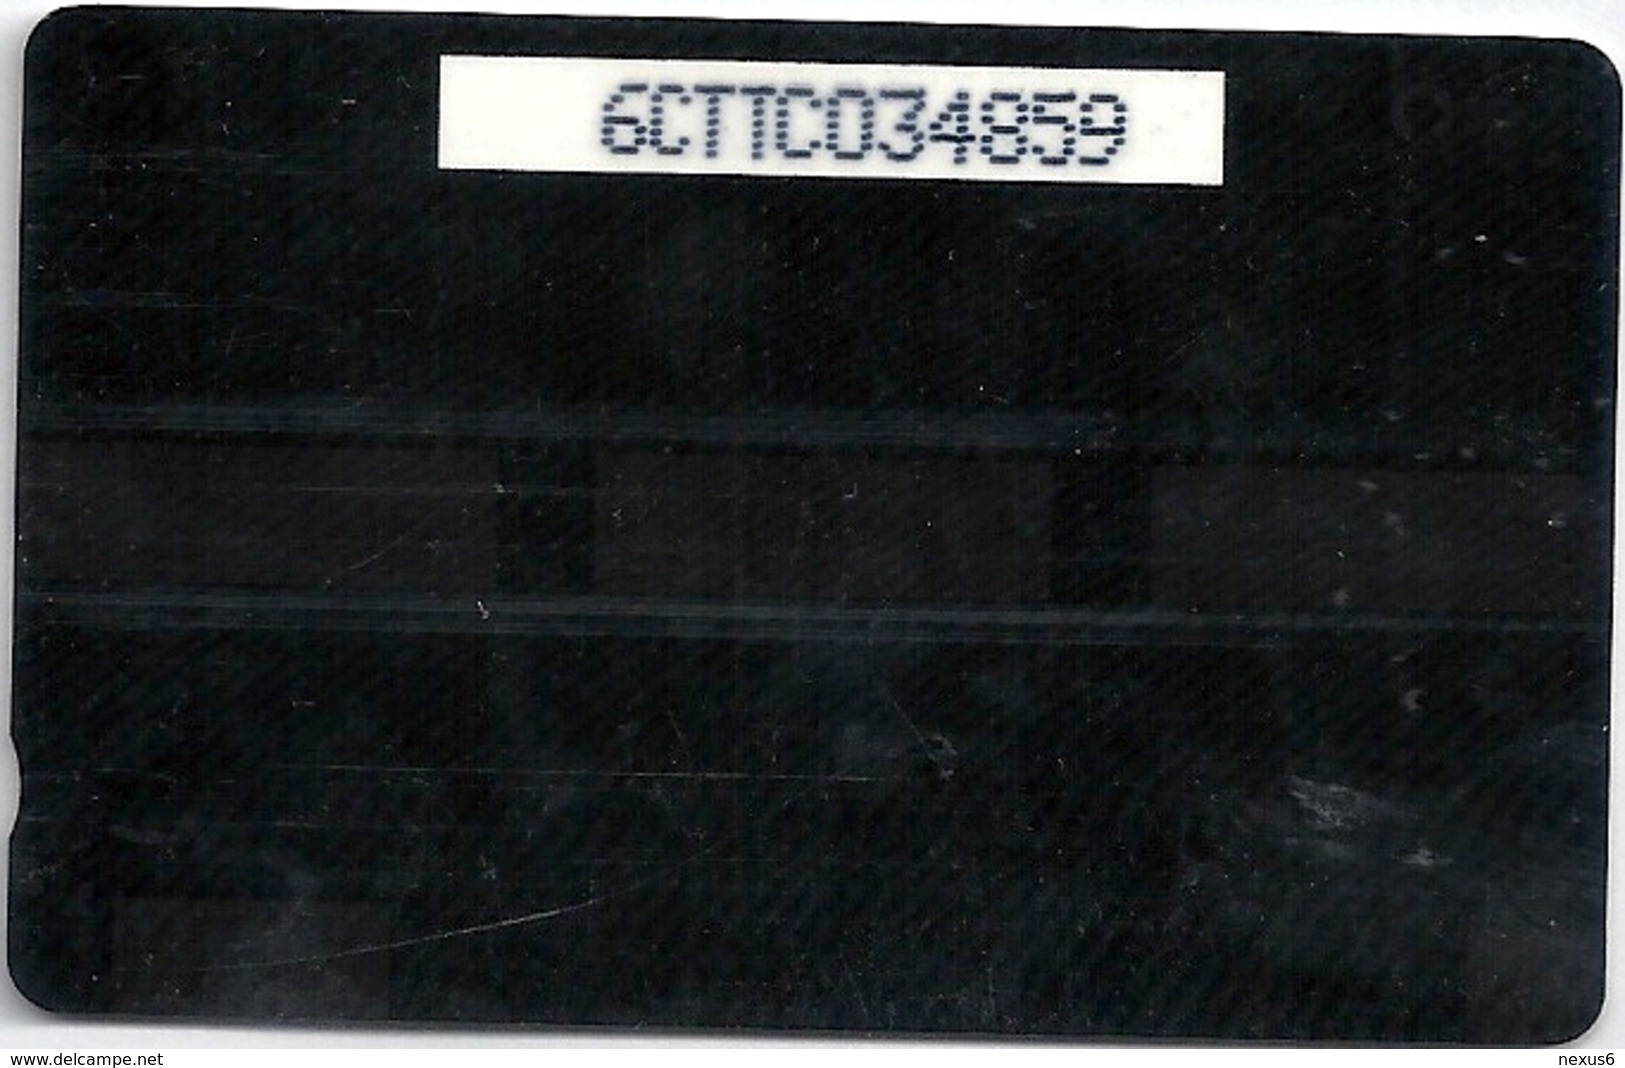 Trinidad & Tobago - TSTT (GPT) - Hosay - 6CTTC - 1993, 50.000ex, Used - Trinidad & Tobago